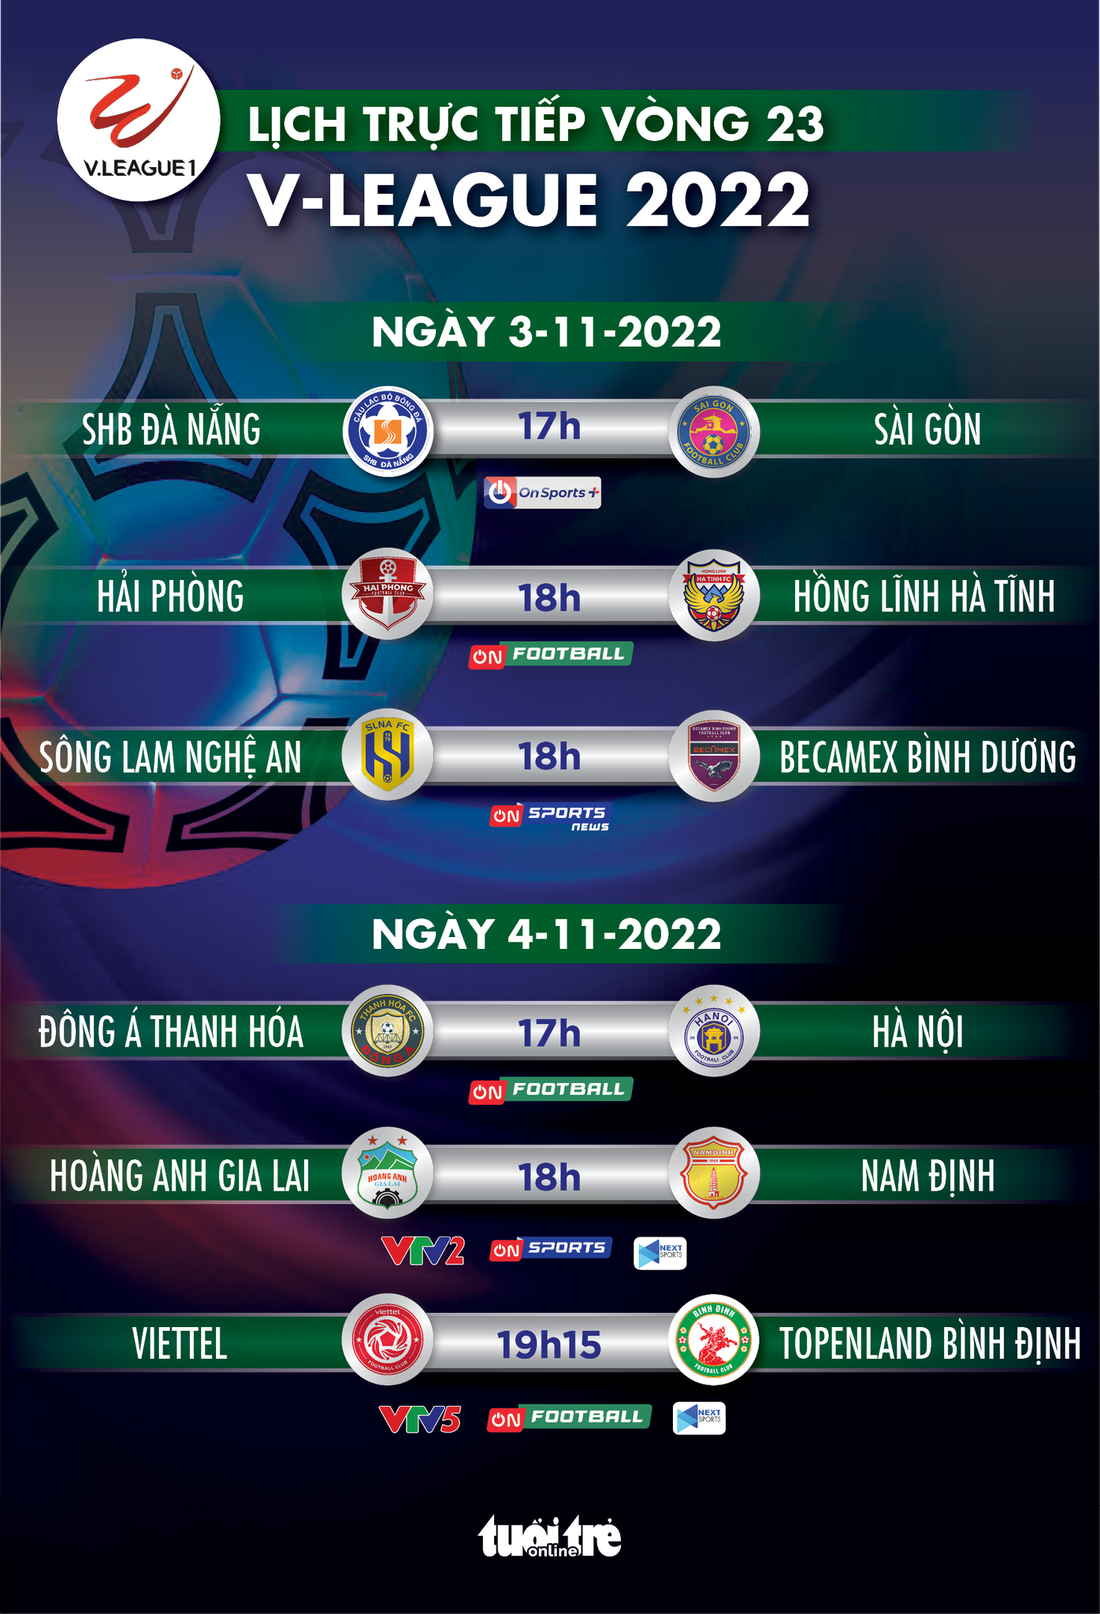 Lịch trực tiếp vòng 23 V-League 2022: Đà Nẵng - Sài Gòn, Viettel - Bình Định - Ảnh 1.